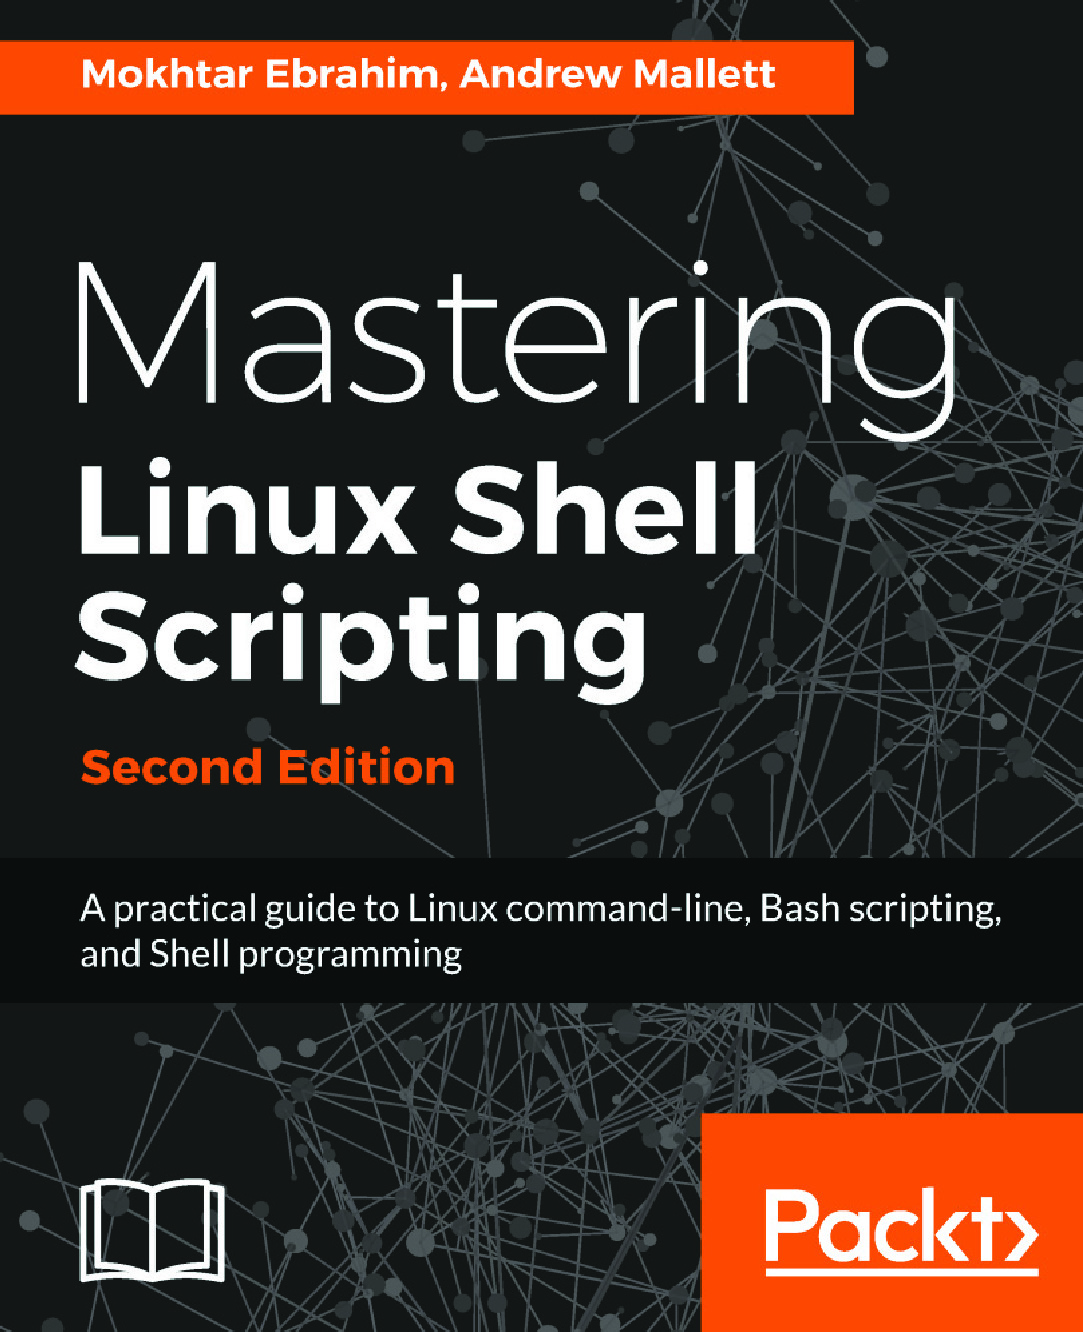 Mokhtar_Ebrahim_Andrew_Mallett_Mastering_Linux_shell_scripting_a